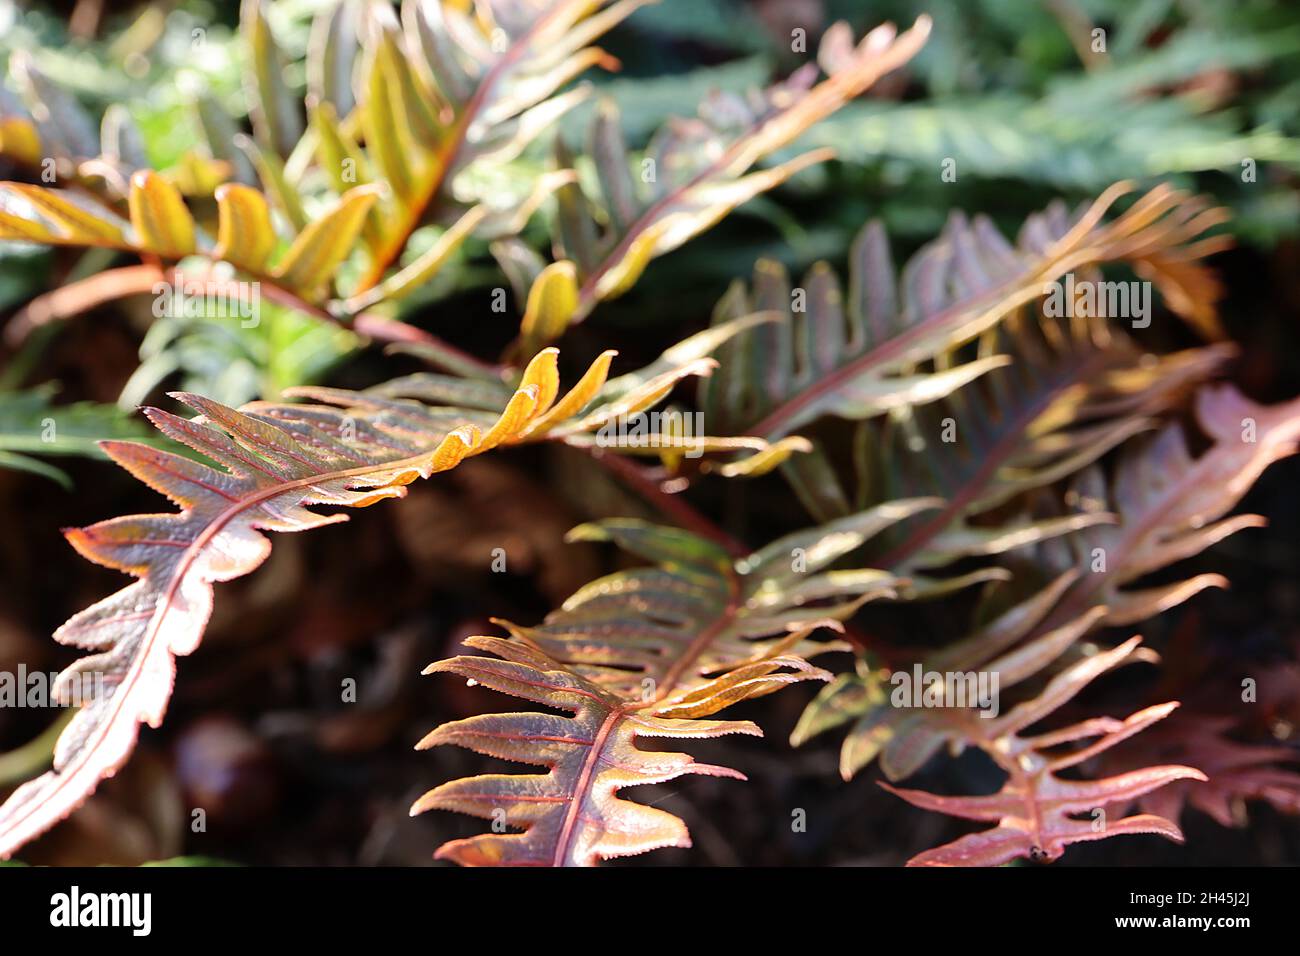 Woodwardia unigemmata Schmuckkettenfarn – glänzende zweibipangeborene dunkelrote und gelb-grüne Wedel mit Stich- oder kettenähnlichen Markierungen, Oktober, England, Großbritannien Stockfoto